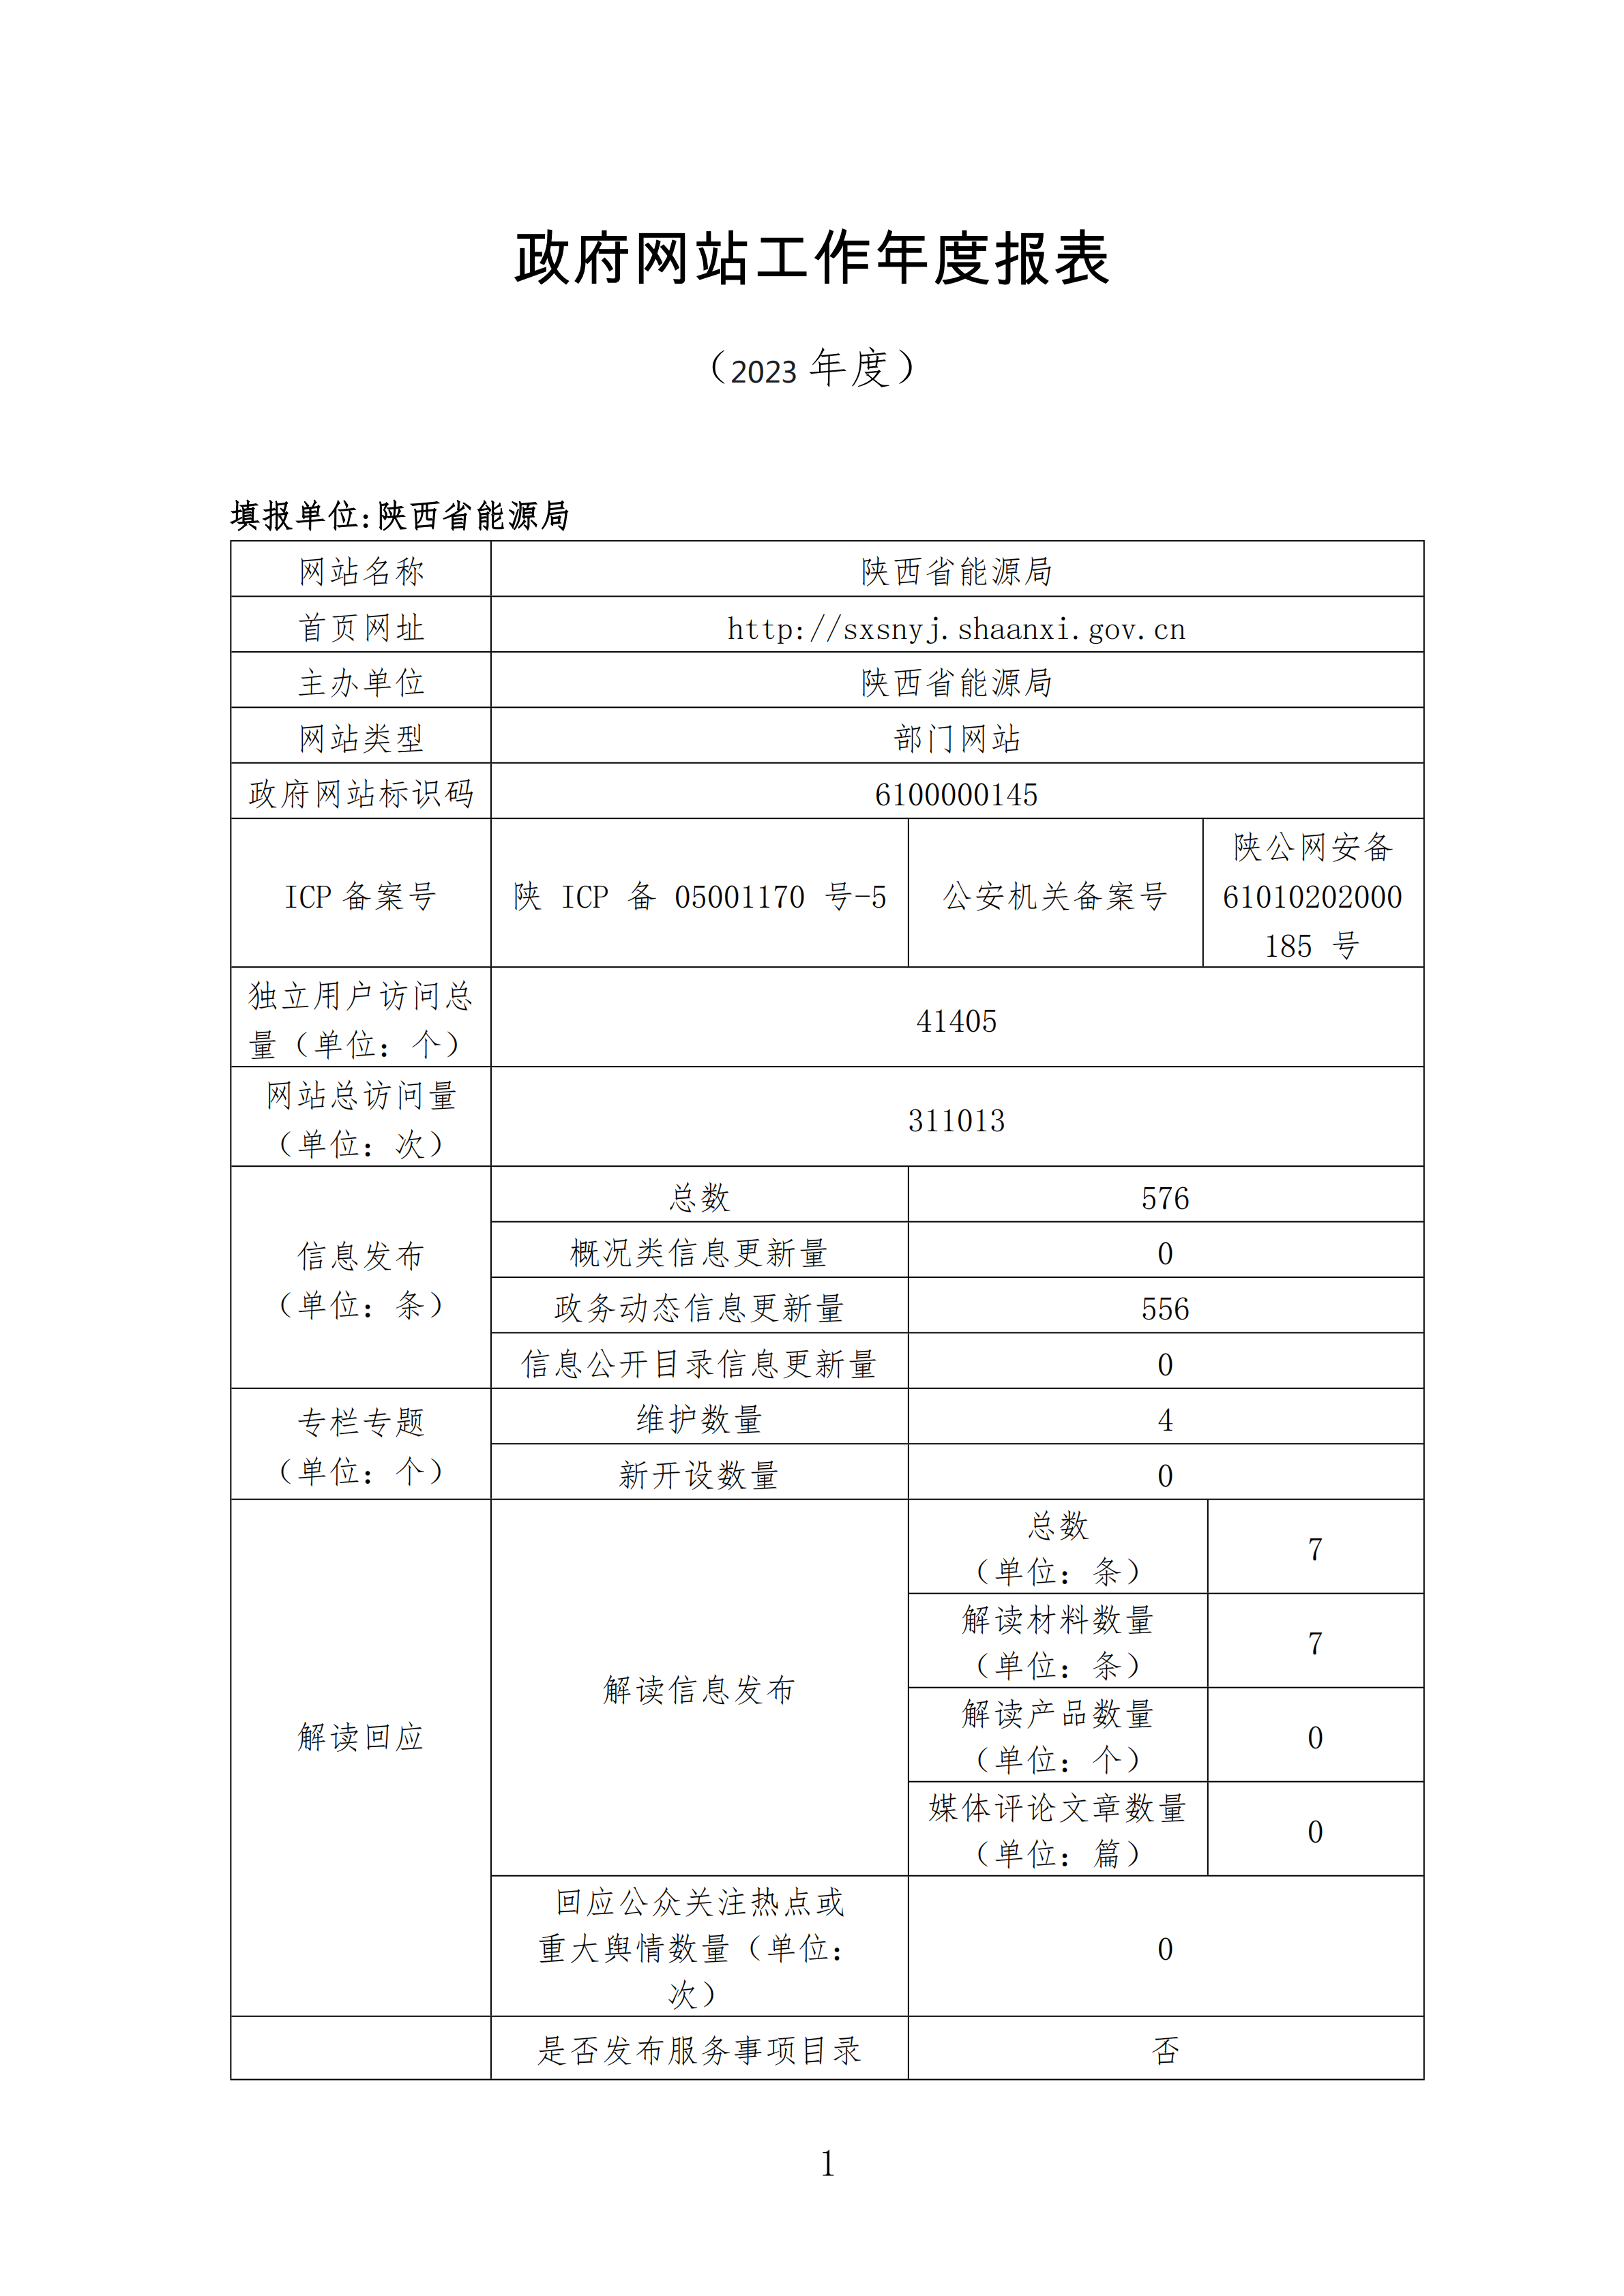 陕西省能源局政府网站工作年度报表（2023年度）_00.png